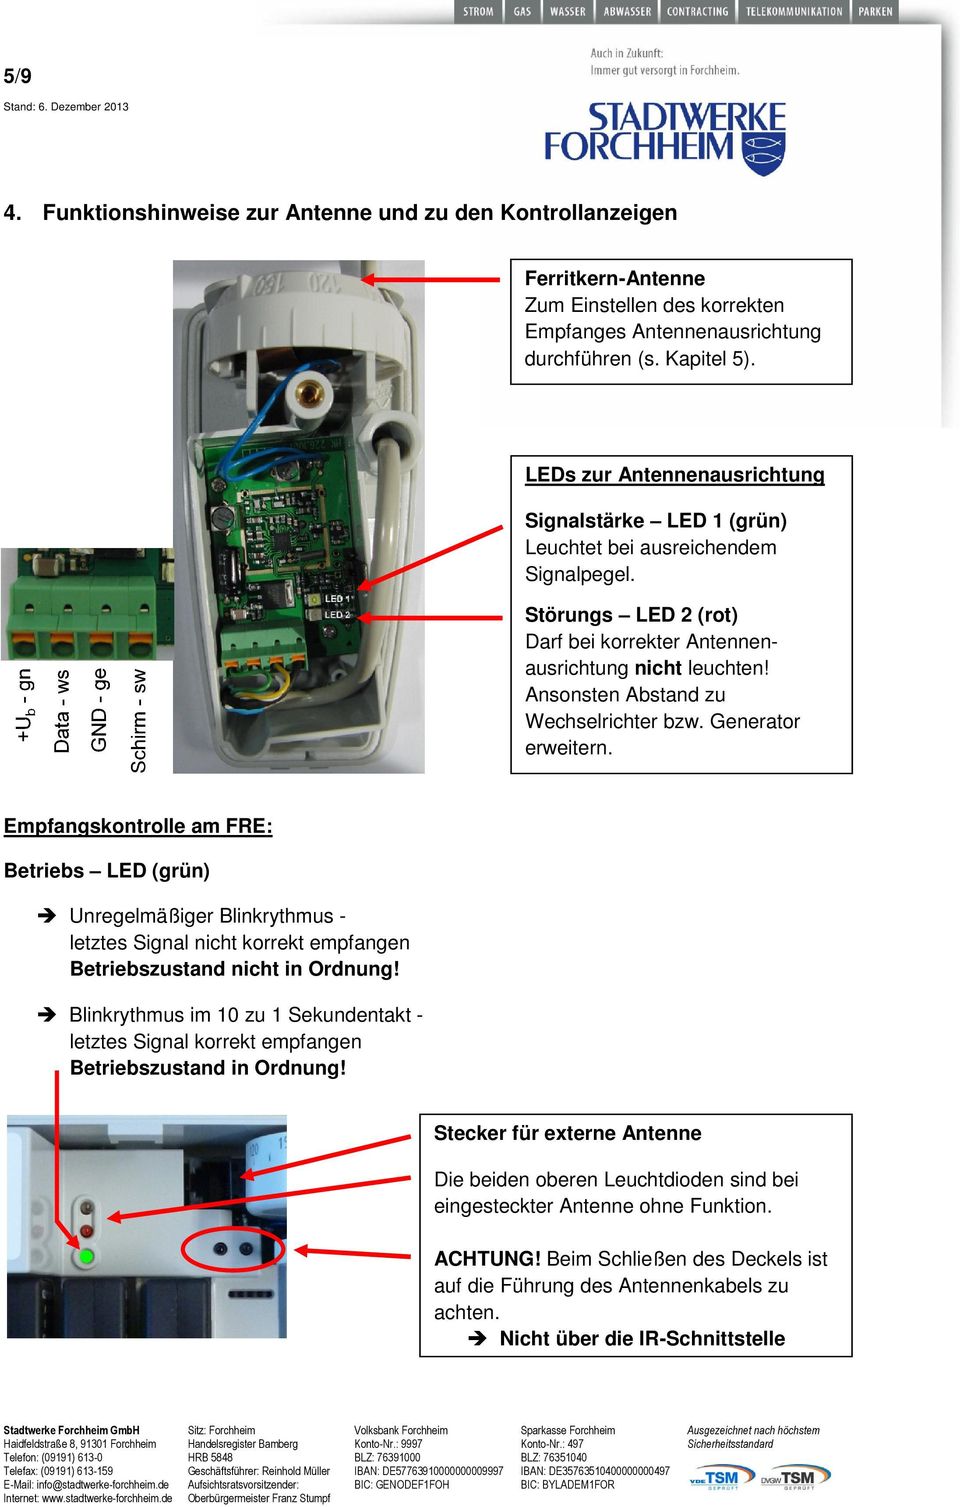 Generator ausrichtung erweitern. Empfangskontrolle am FRE: Betriebs LED (grün) Unregelmäßiger Blinkrythmus - letztes Signal nicht korrekt empfangen Betriebszustand nicht in Ordnung!